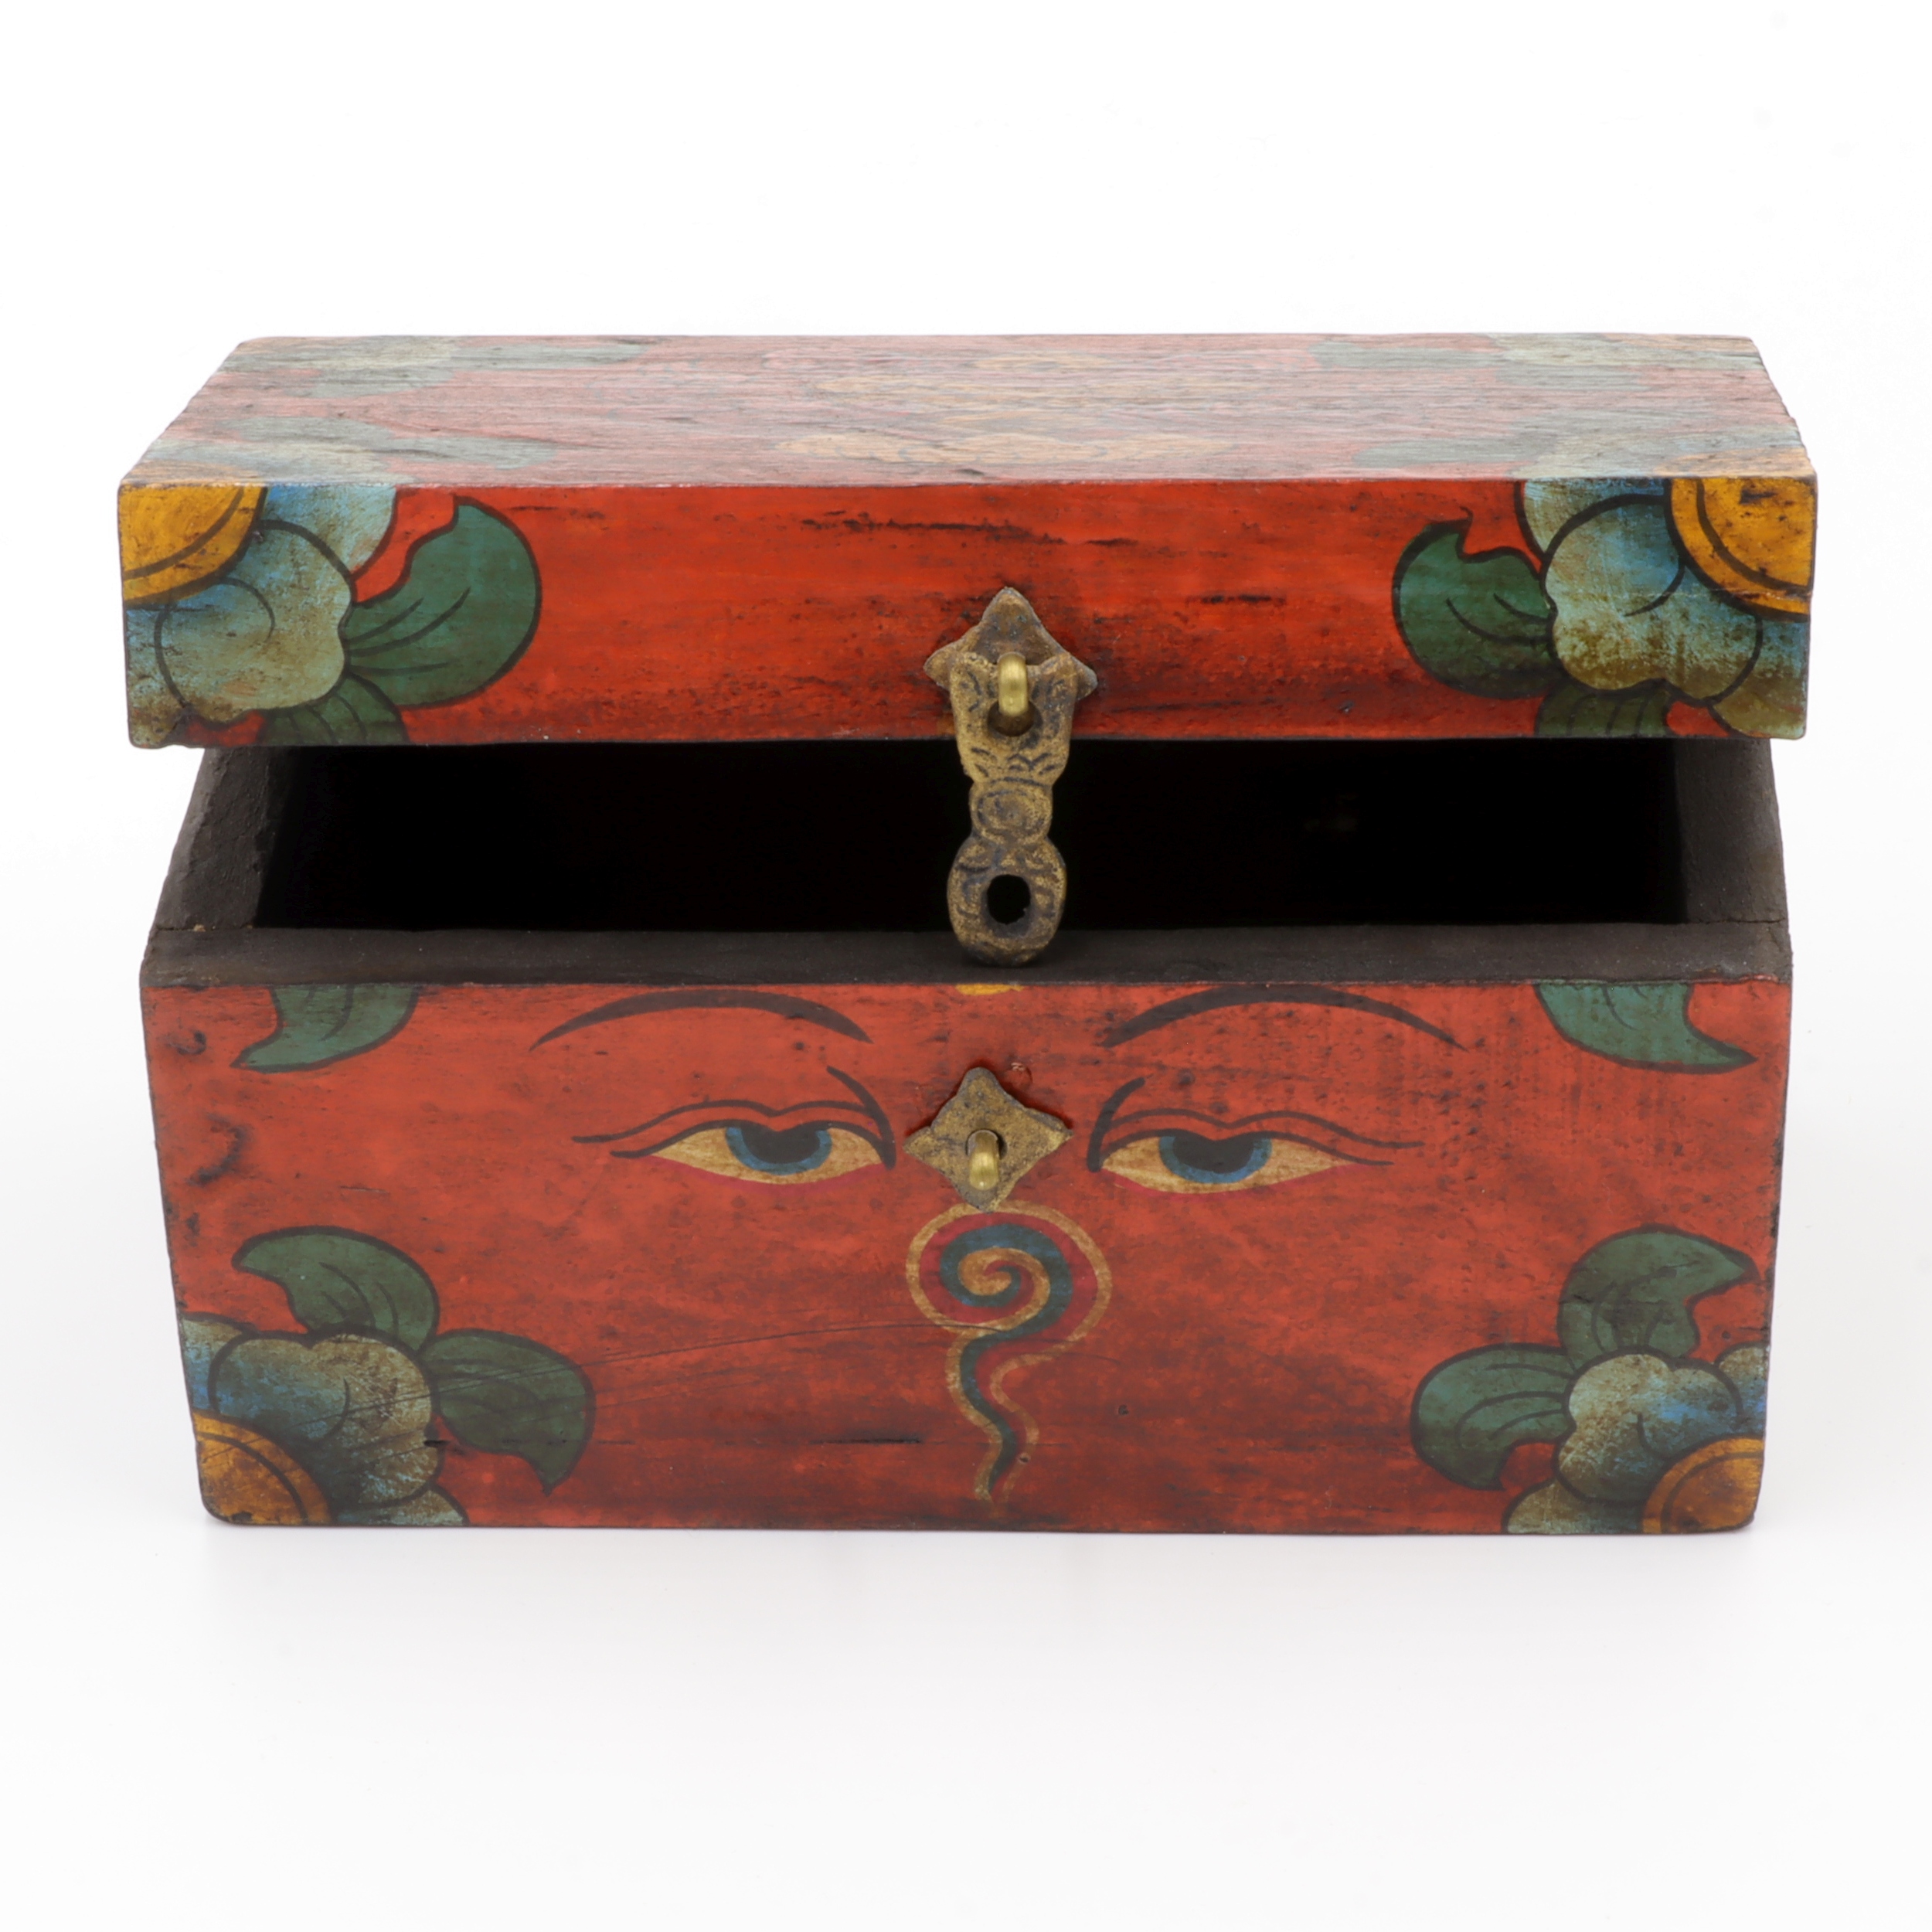 Handbemalte Kiste aus Holz -  Buddha Eyes, Endlosknoten, Ashtamangala - Truhen Design - typisch nepalesiche Farben - fair gehandelt aus Nepal